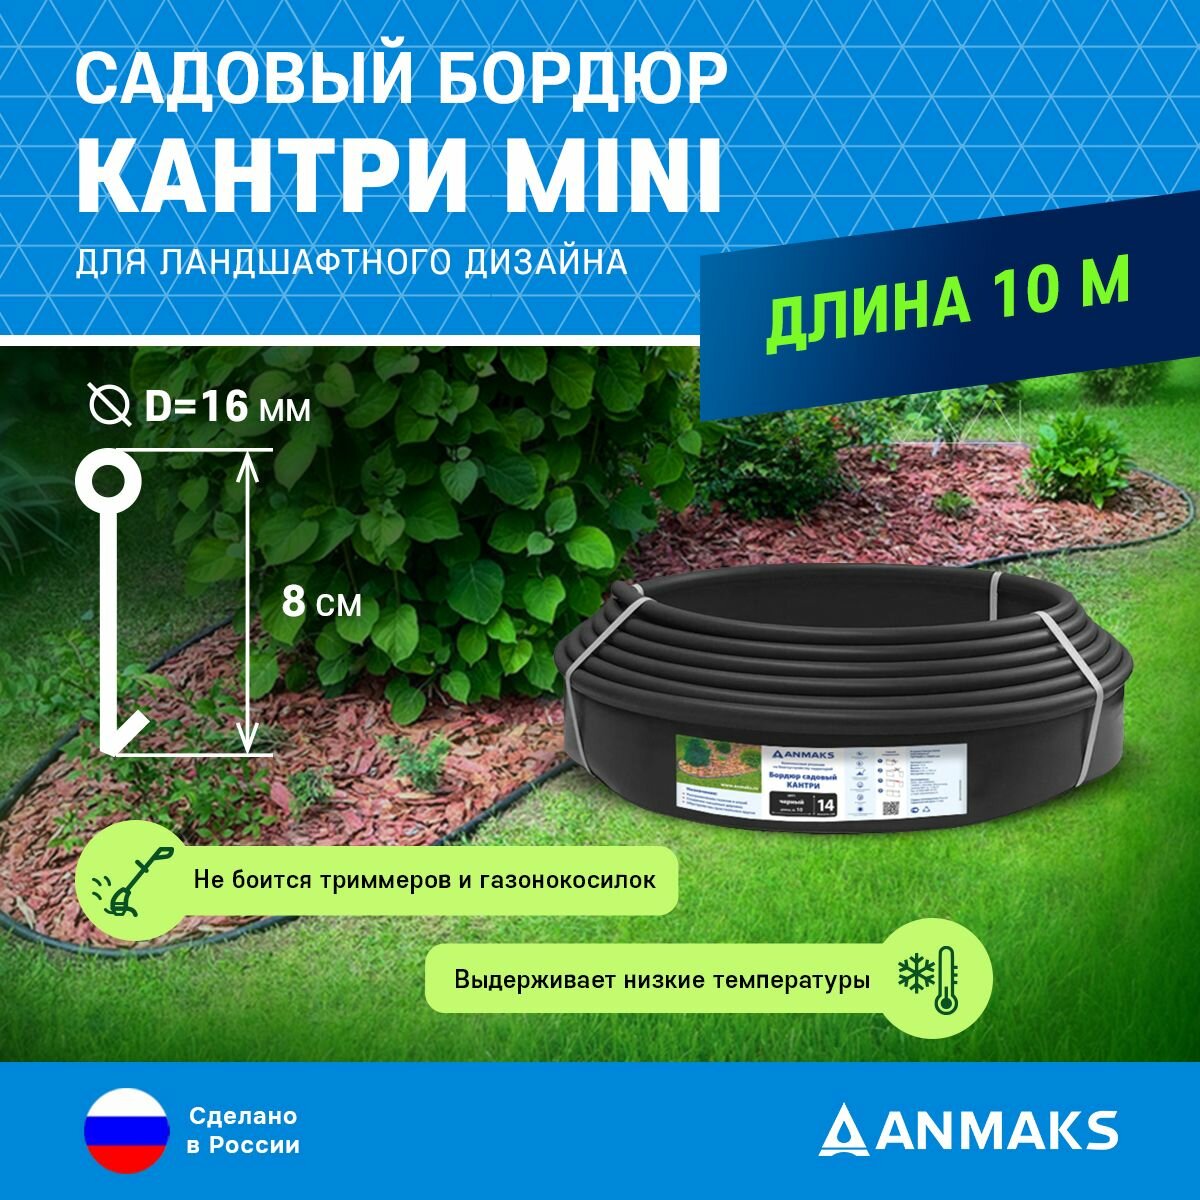 Пластиковый садовый бордюр ANMAKS Кантри MINI черный, длина 10000 мм, высота 80 мм, арт. 82400-Ч